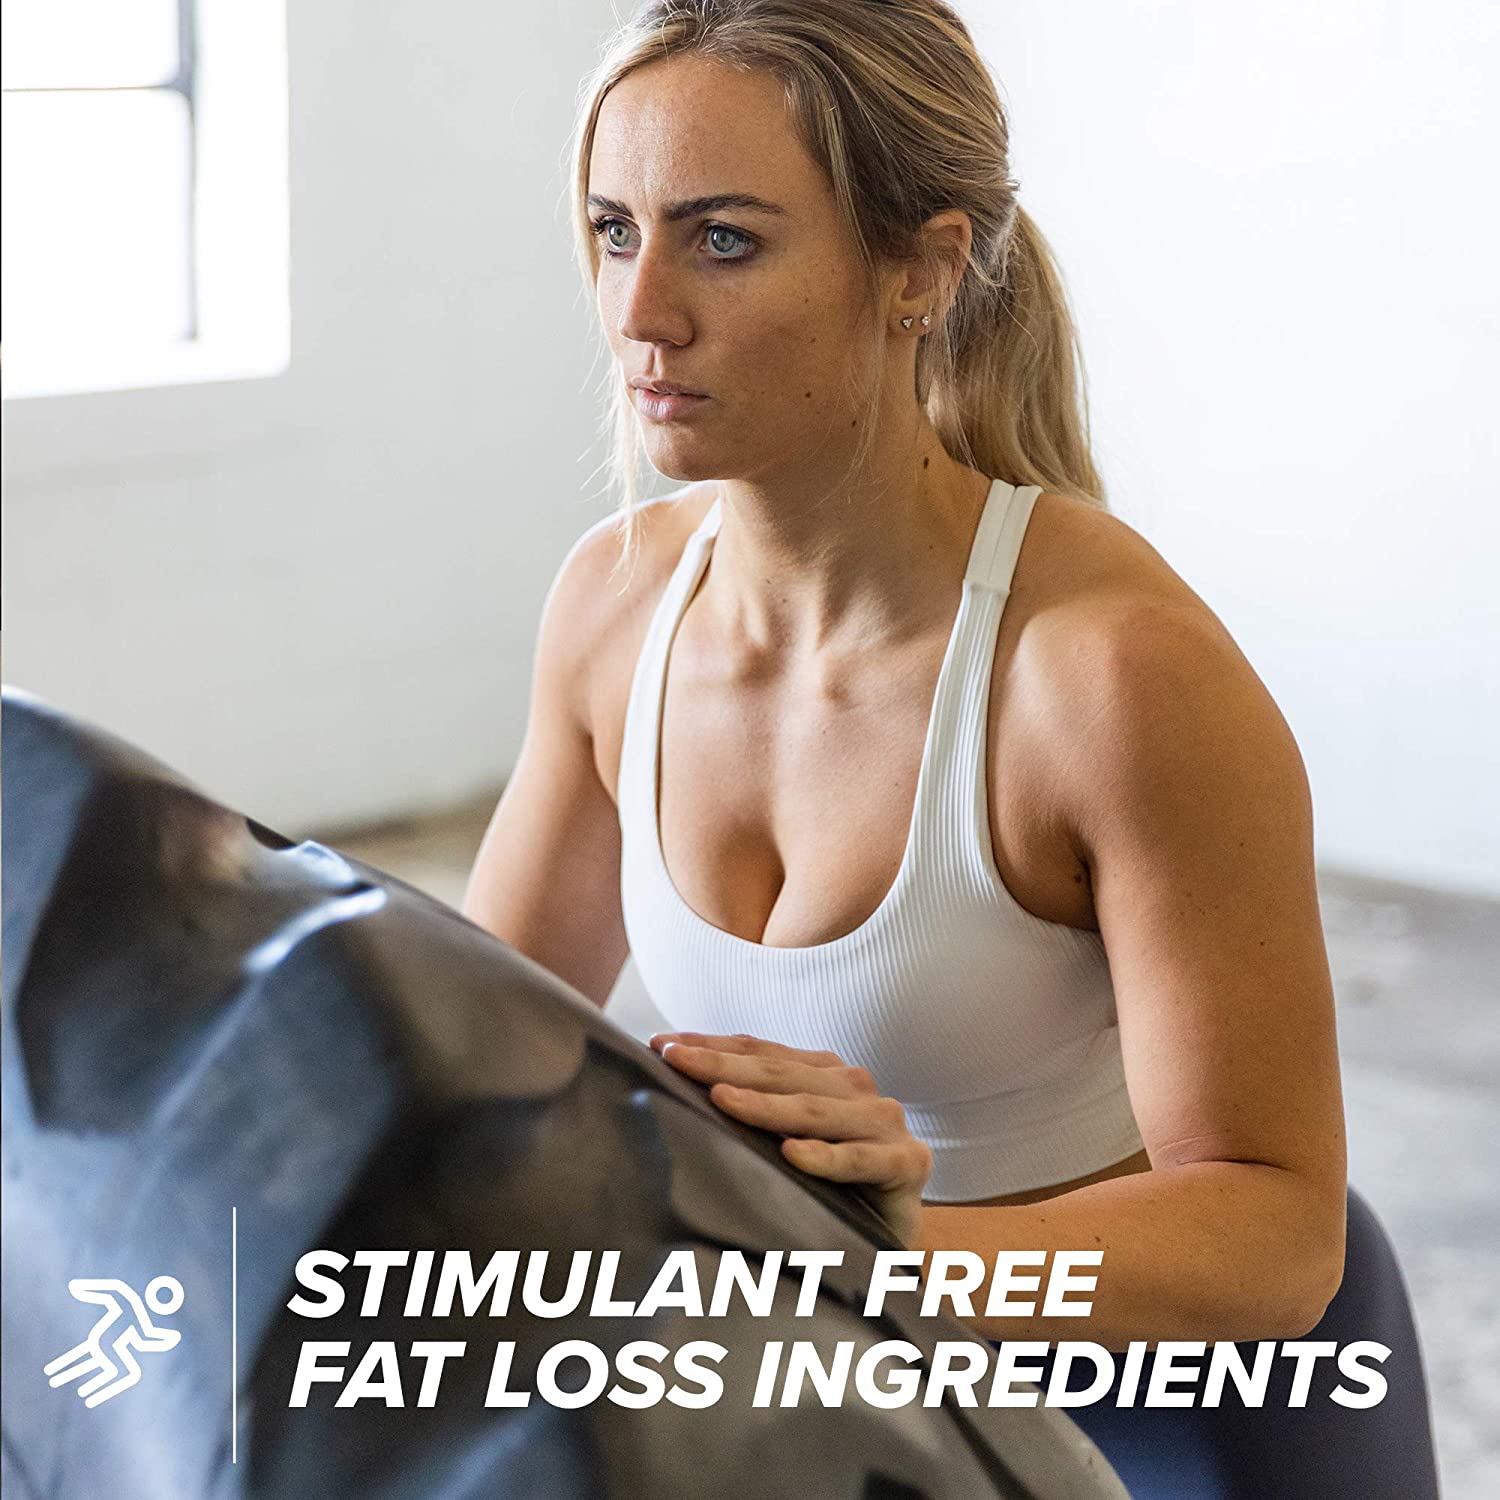 clk stim free fat burner - stim free fat loss ingredients View 5